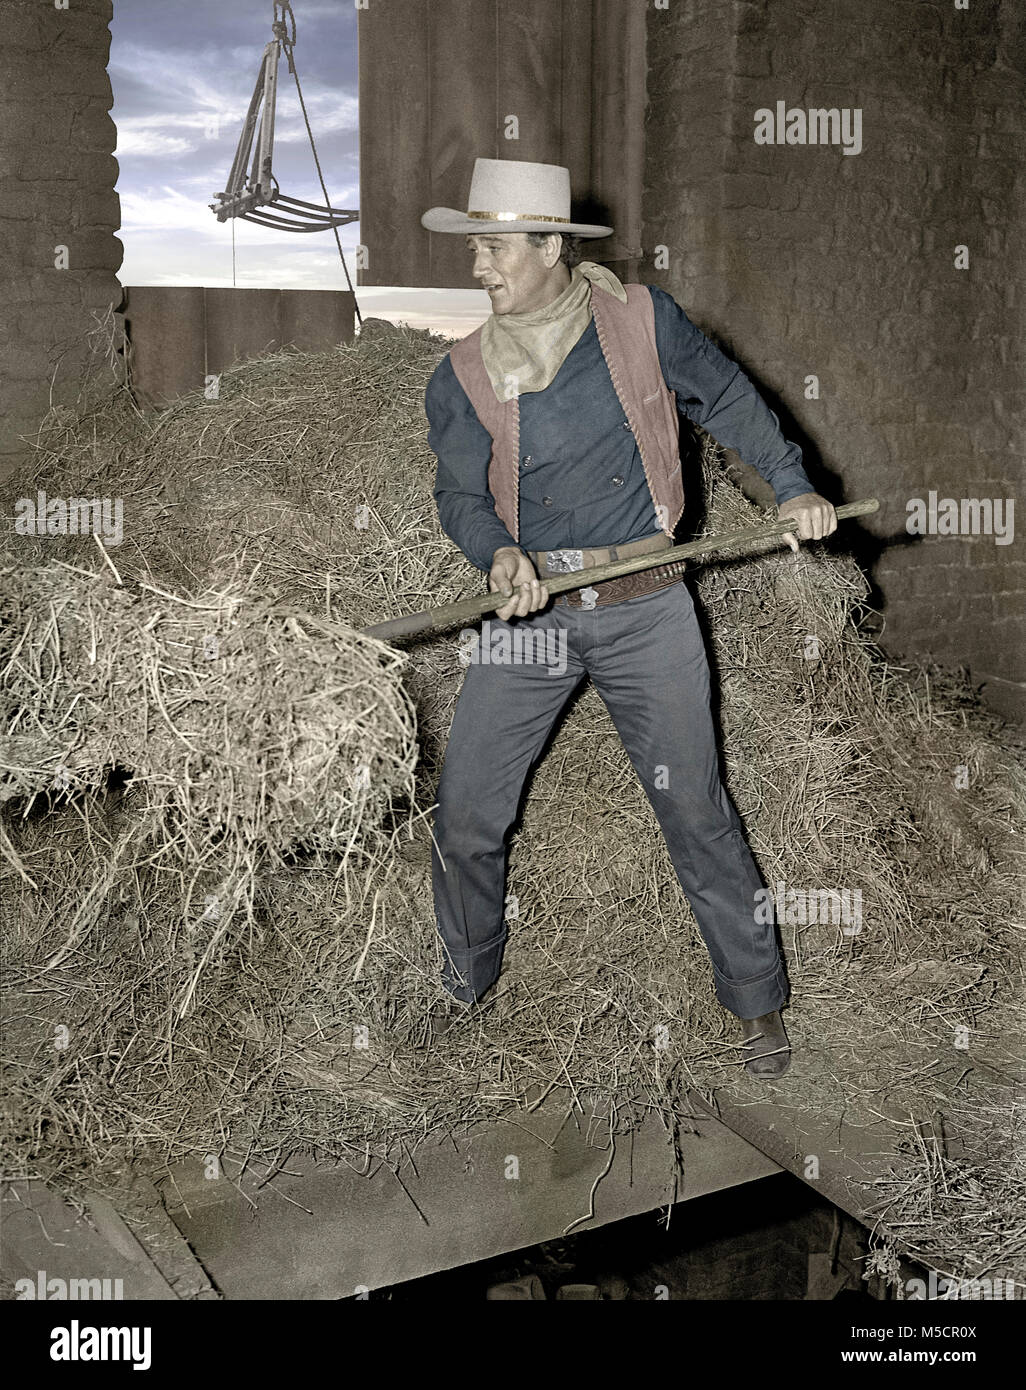 John Wayne dans la grange du film Angel et le Badman. Droit de l'original 4x5 po B&W négative de l'appareil photo. Banque D'Images